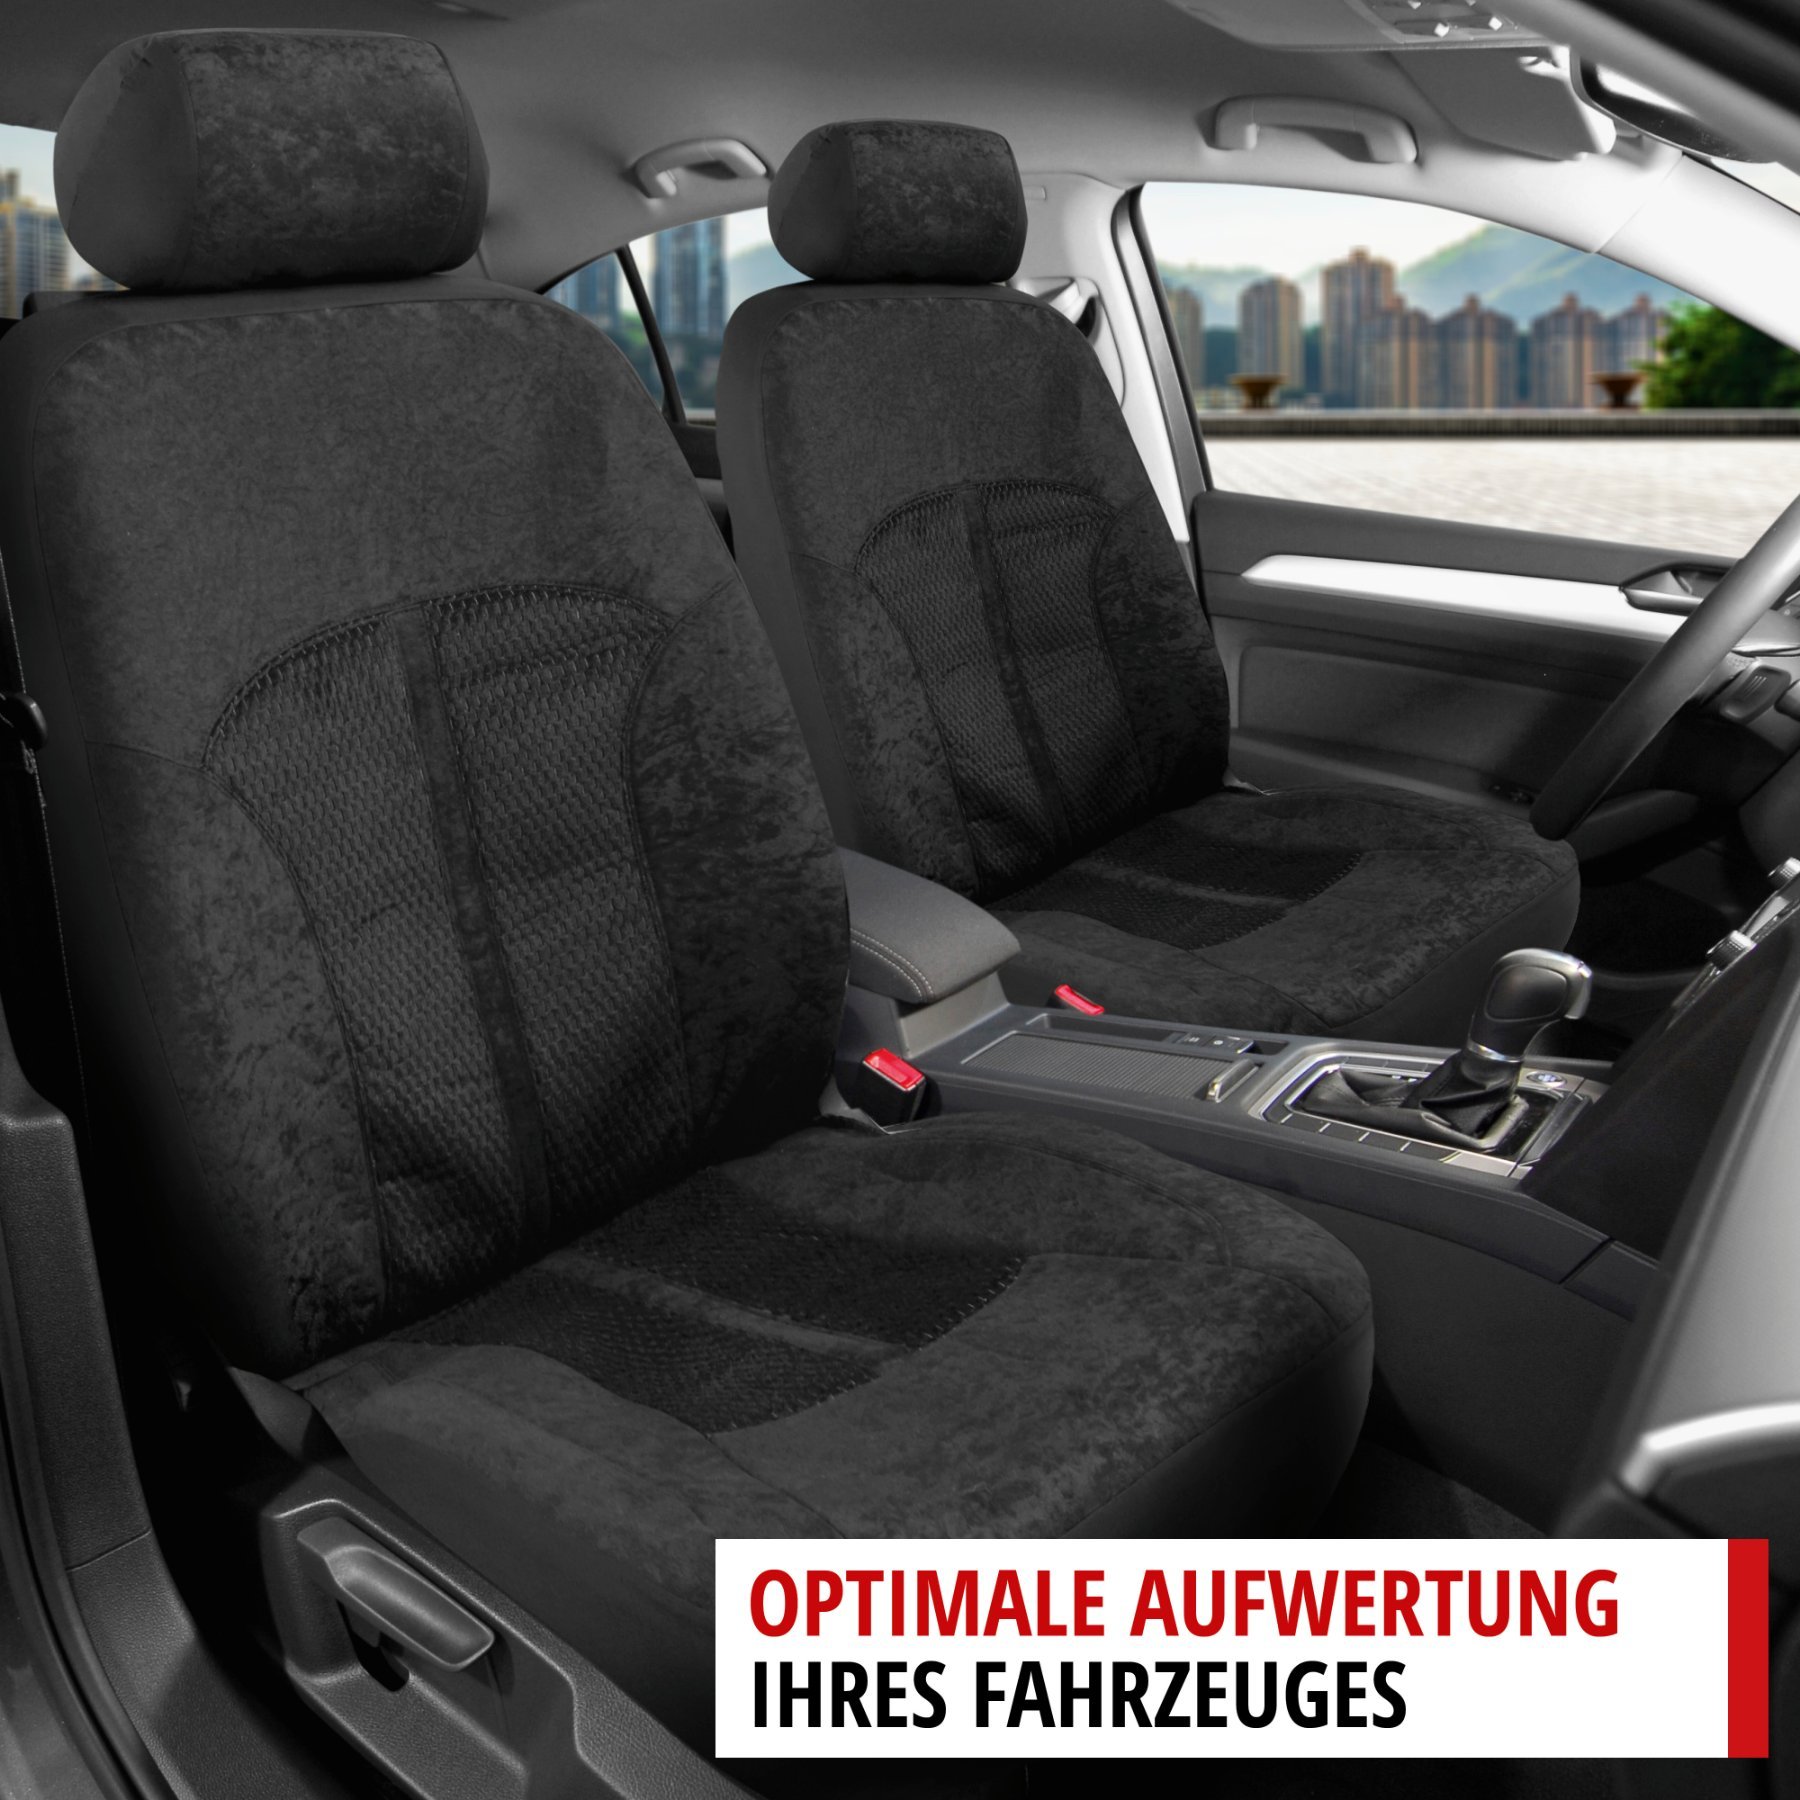 ZIPP IT Premium Velvet Autositzbezüge für zwei Vordersitze mit Reissverschluss System